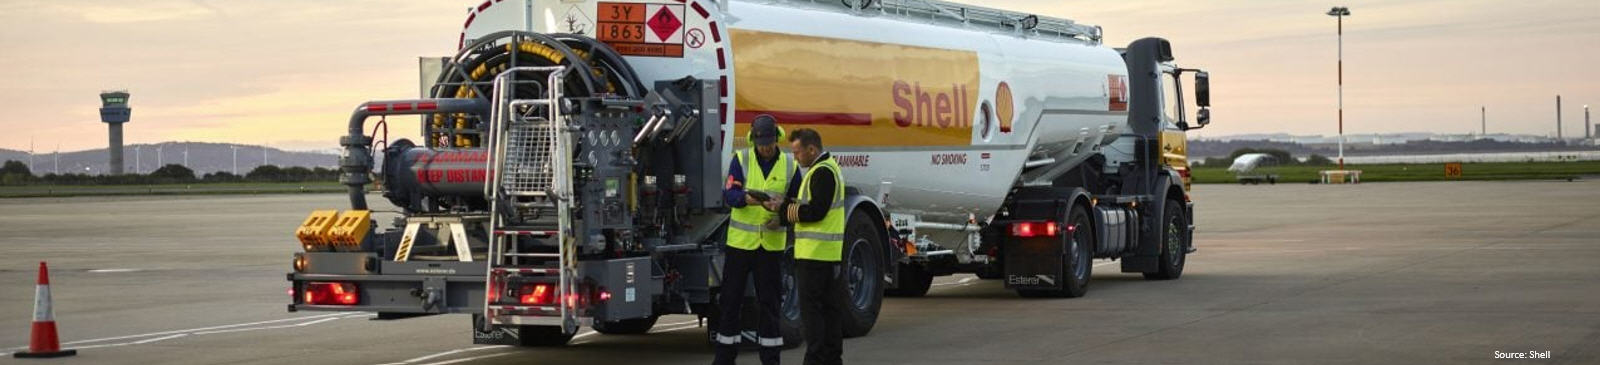 Koers Shell en nieuws over het aandeel Shell.